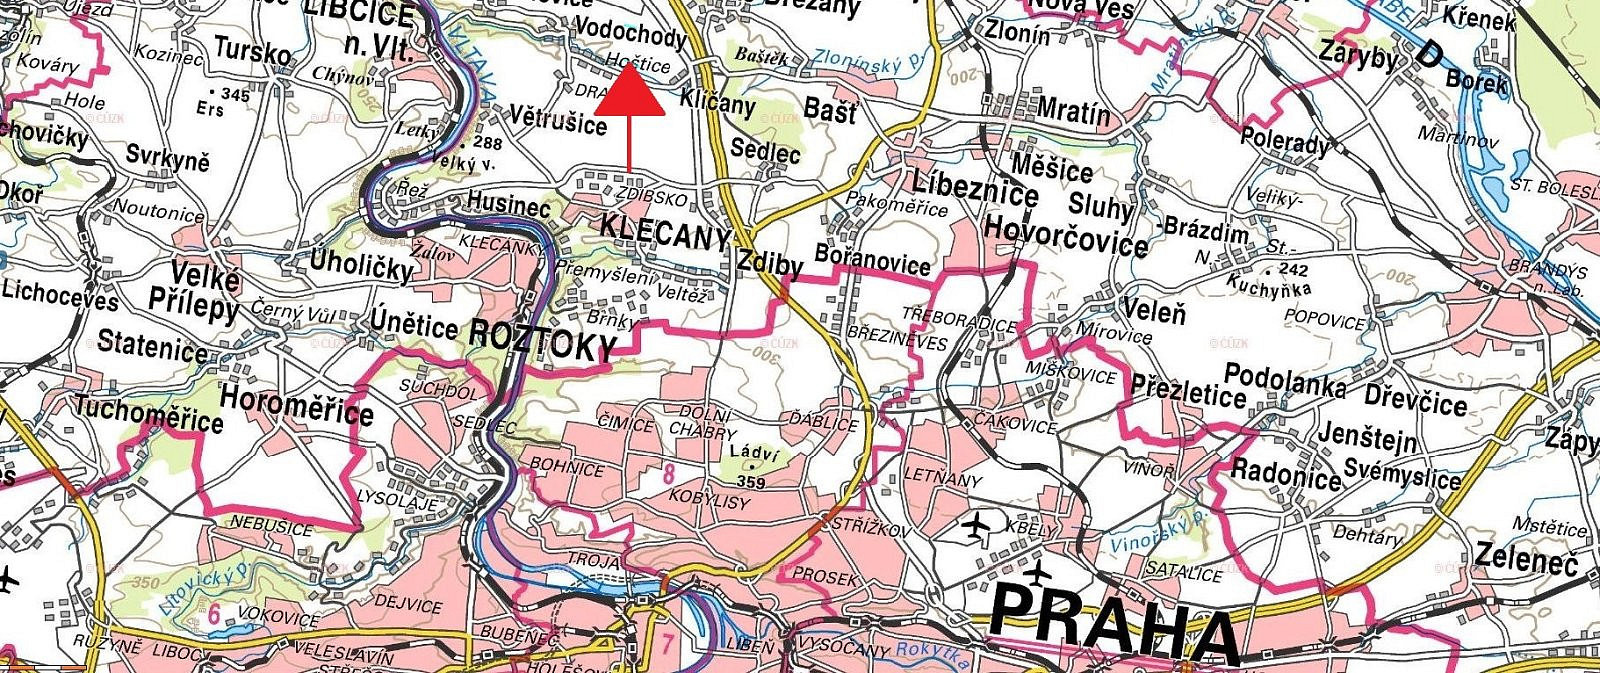 Vodochody - Hoštice, okres Praha-východ